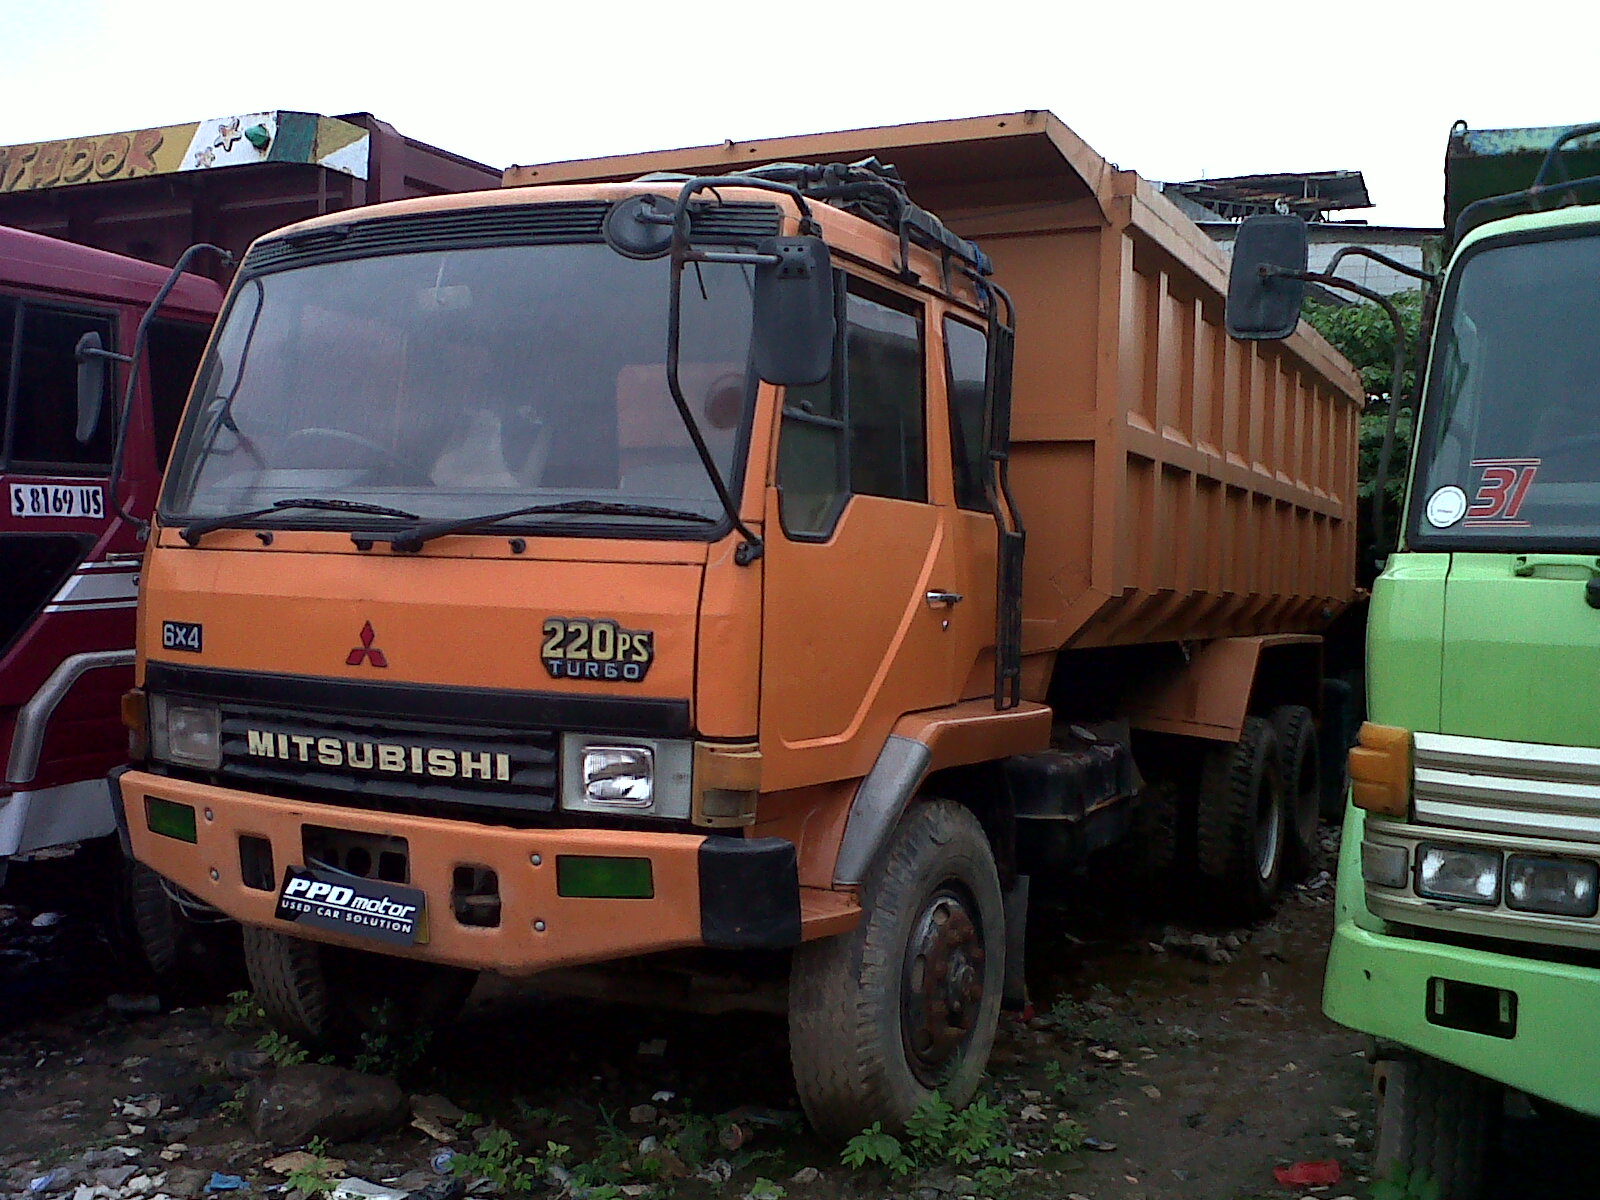  Harga  Dump Truck Bekas  Lampung  Lamp Design Ideas